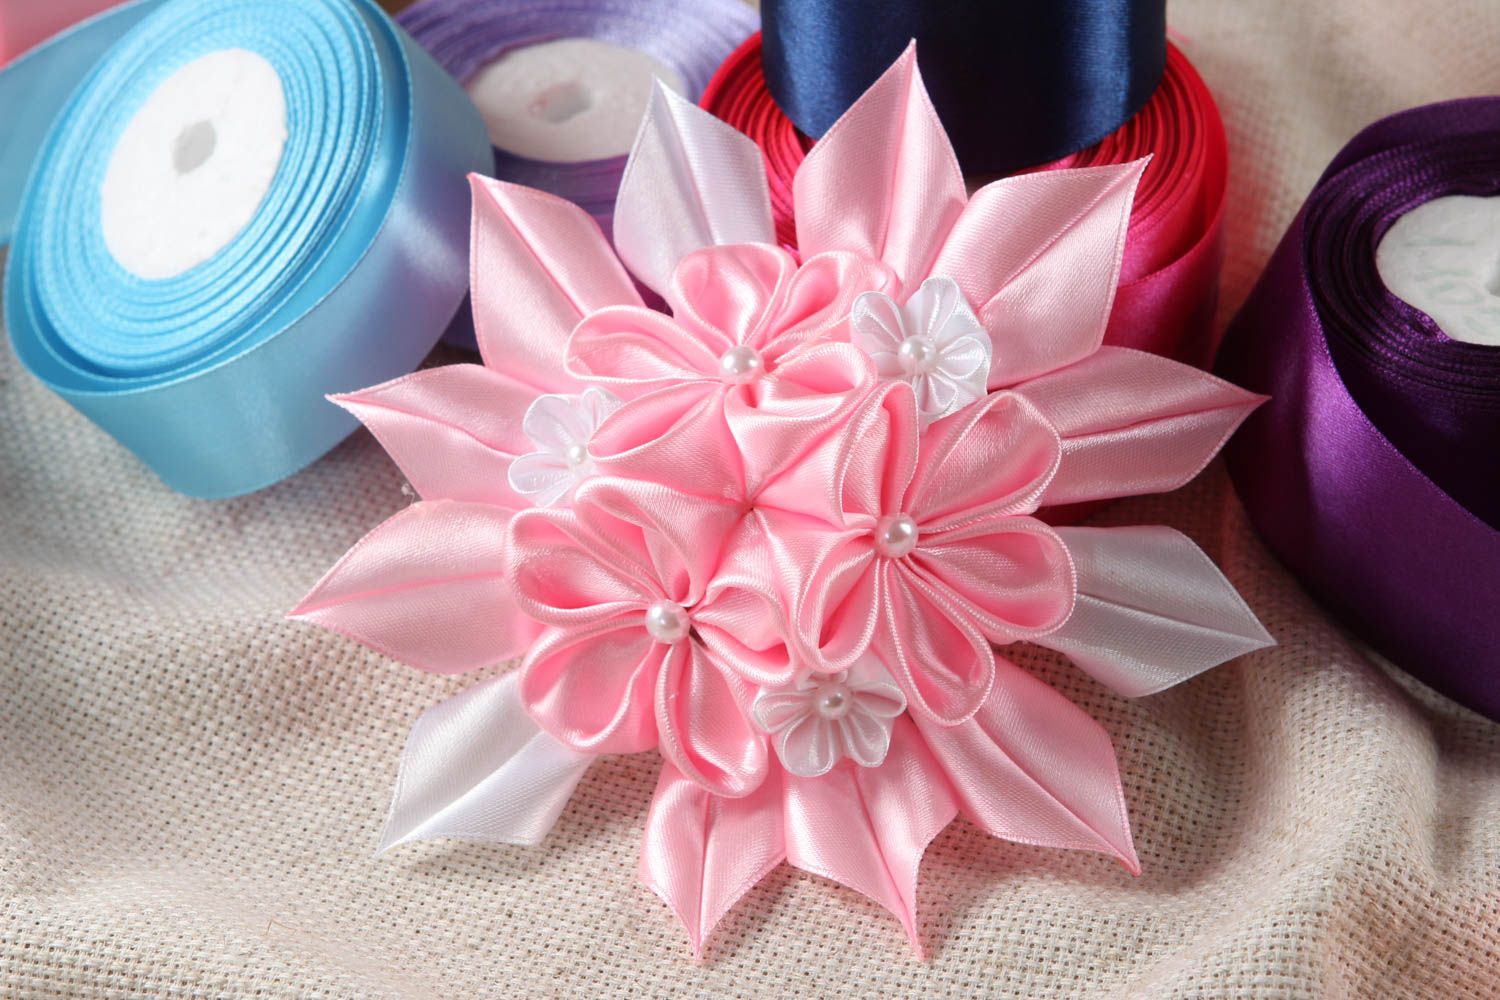 Аксессуар для волос ручной работы заколка-цветок авторское украшение розовое фото 1